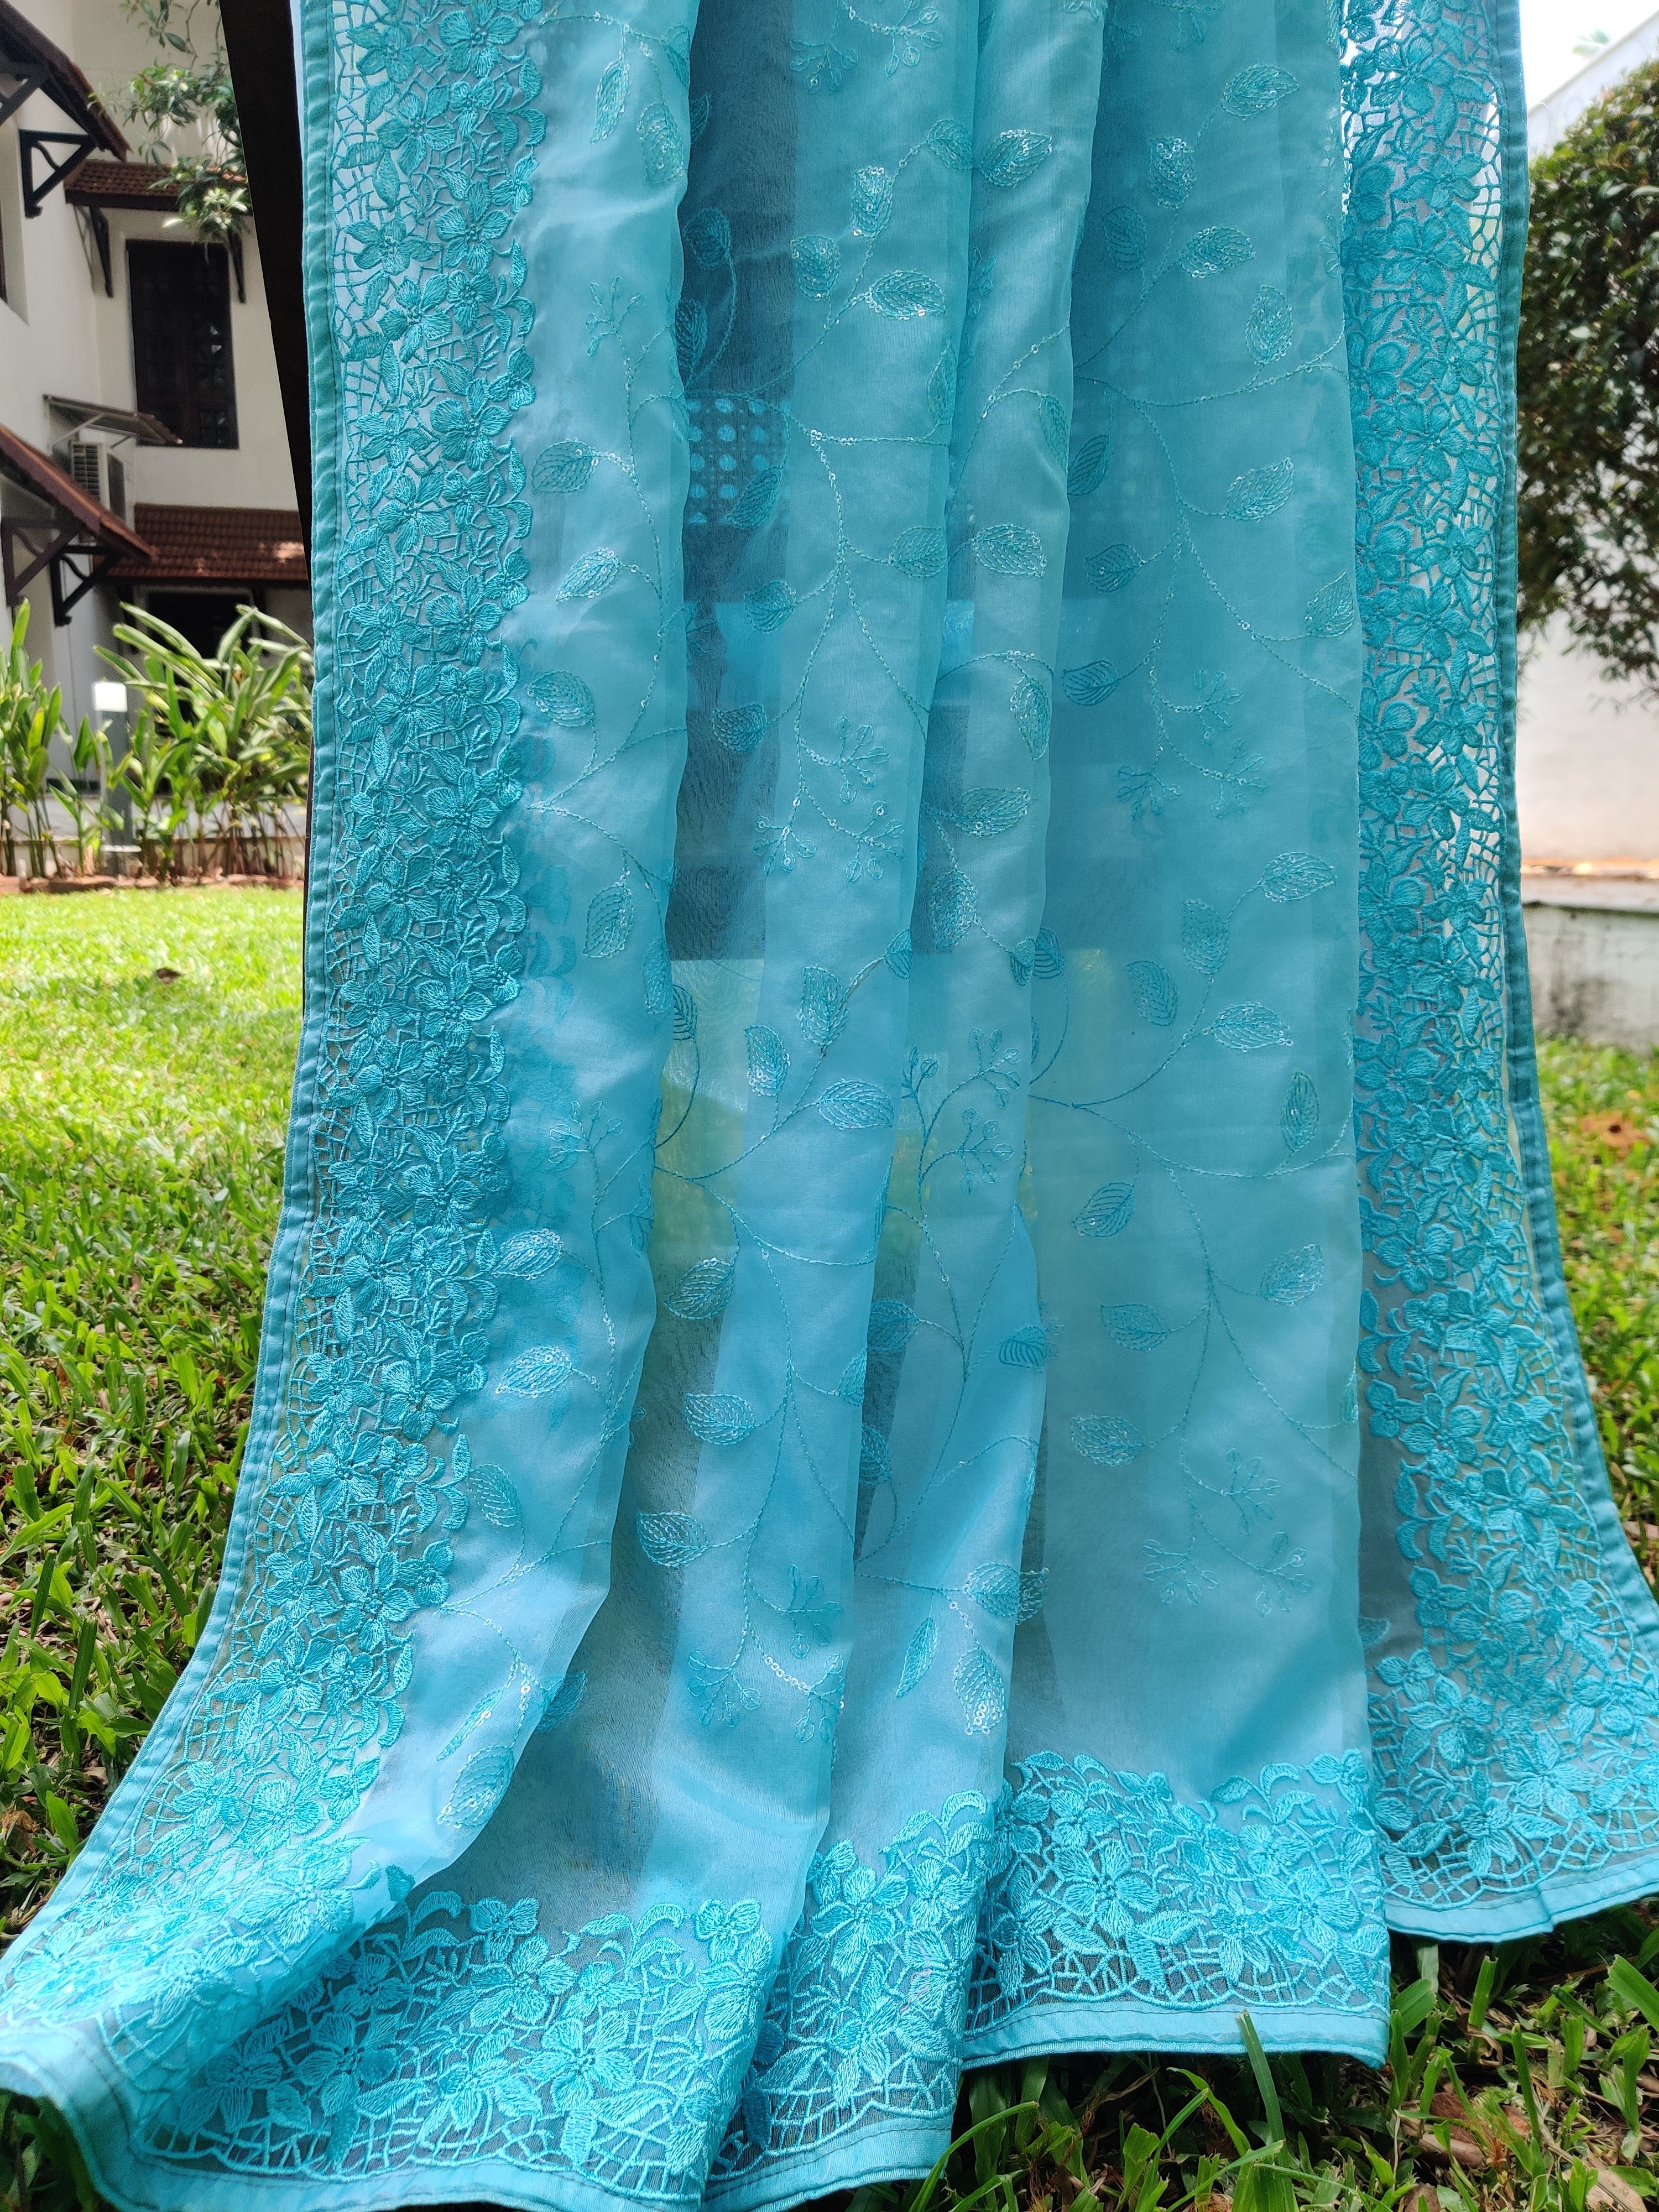 Blue Organza sari with Floral Design